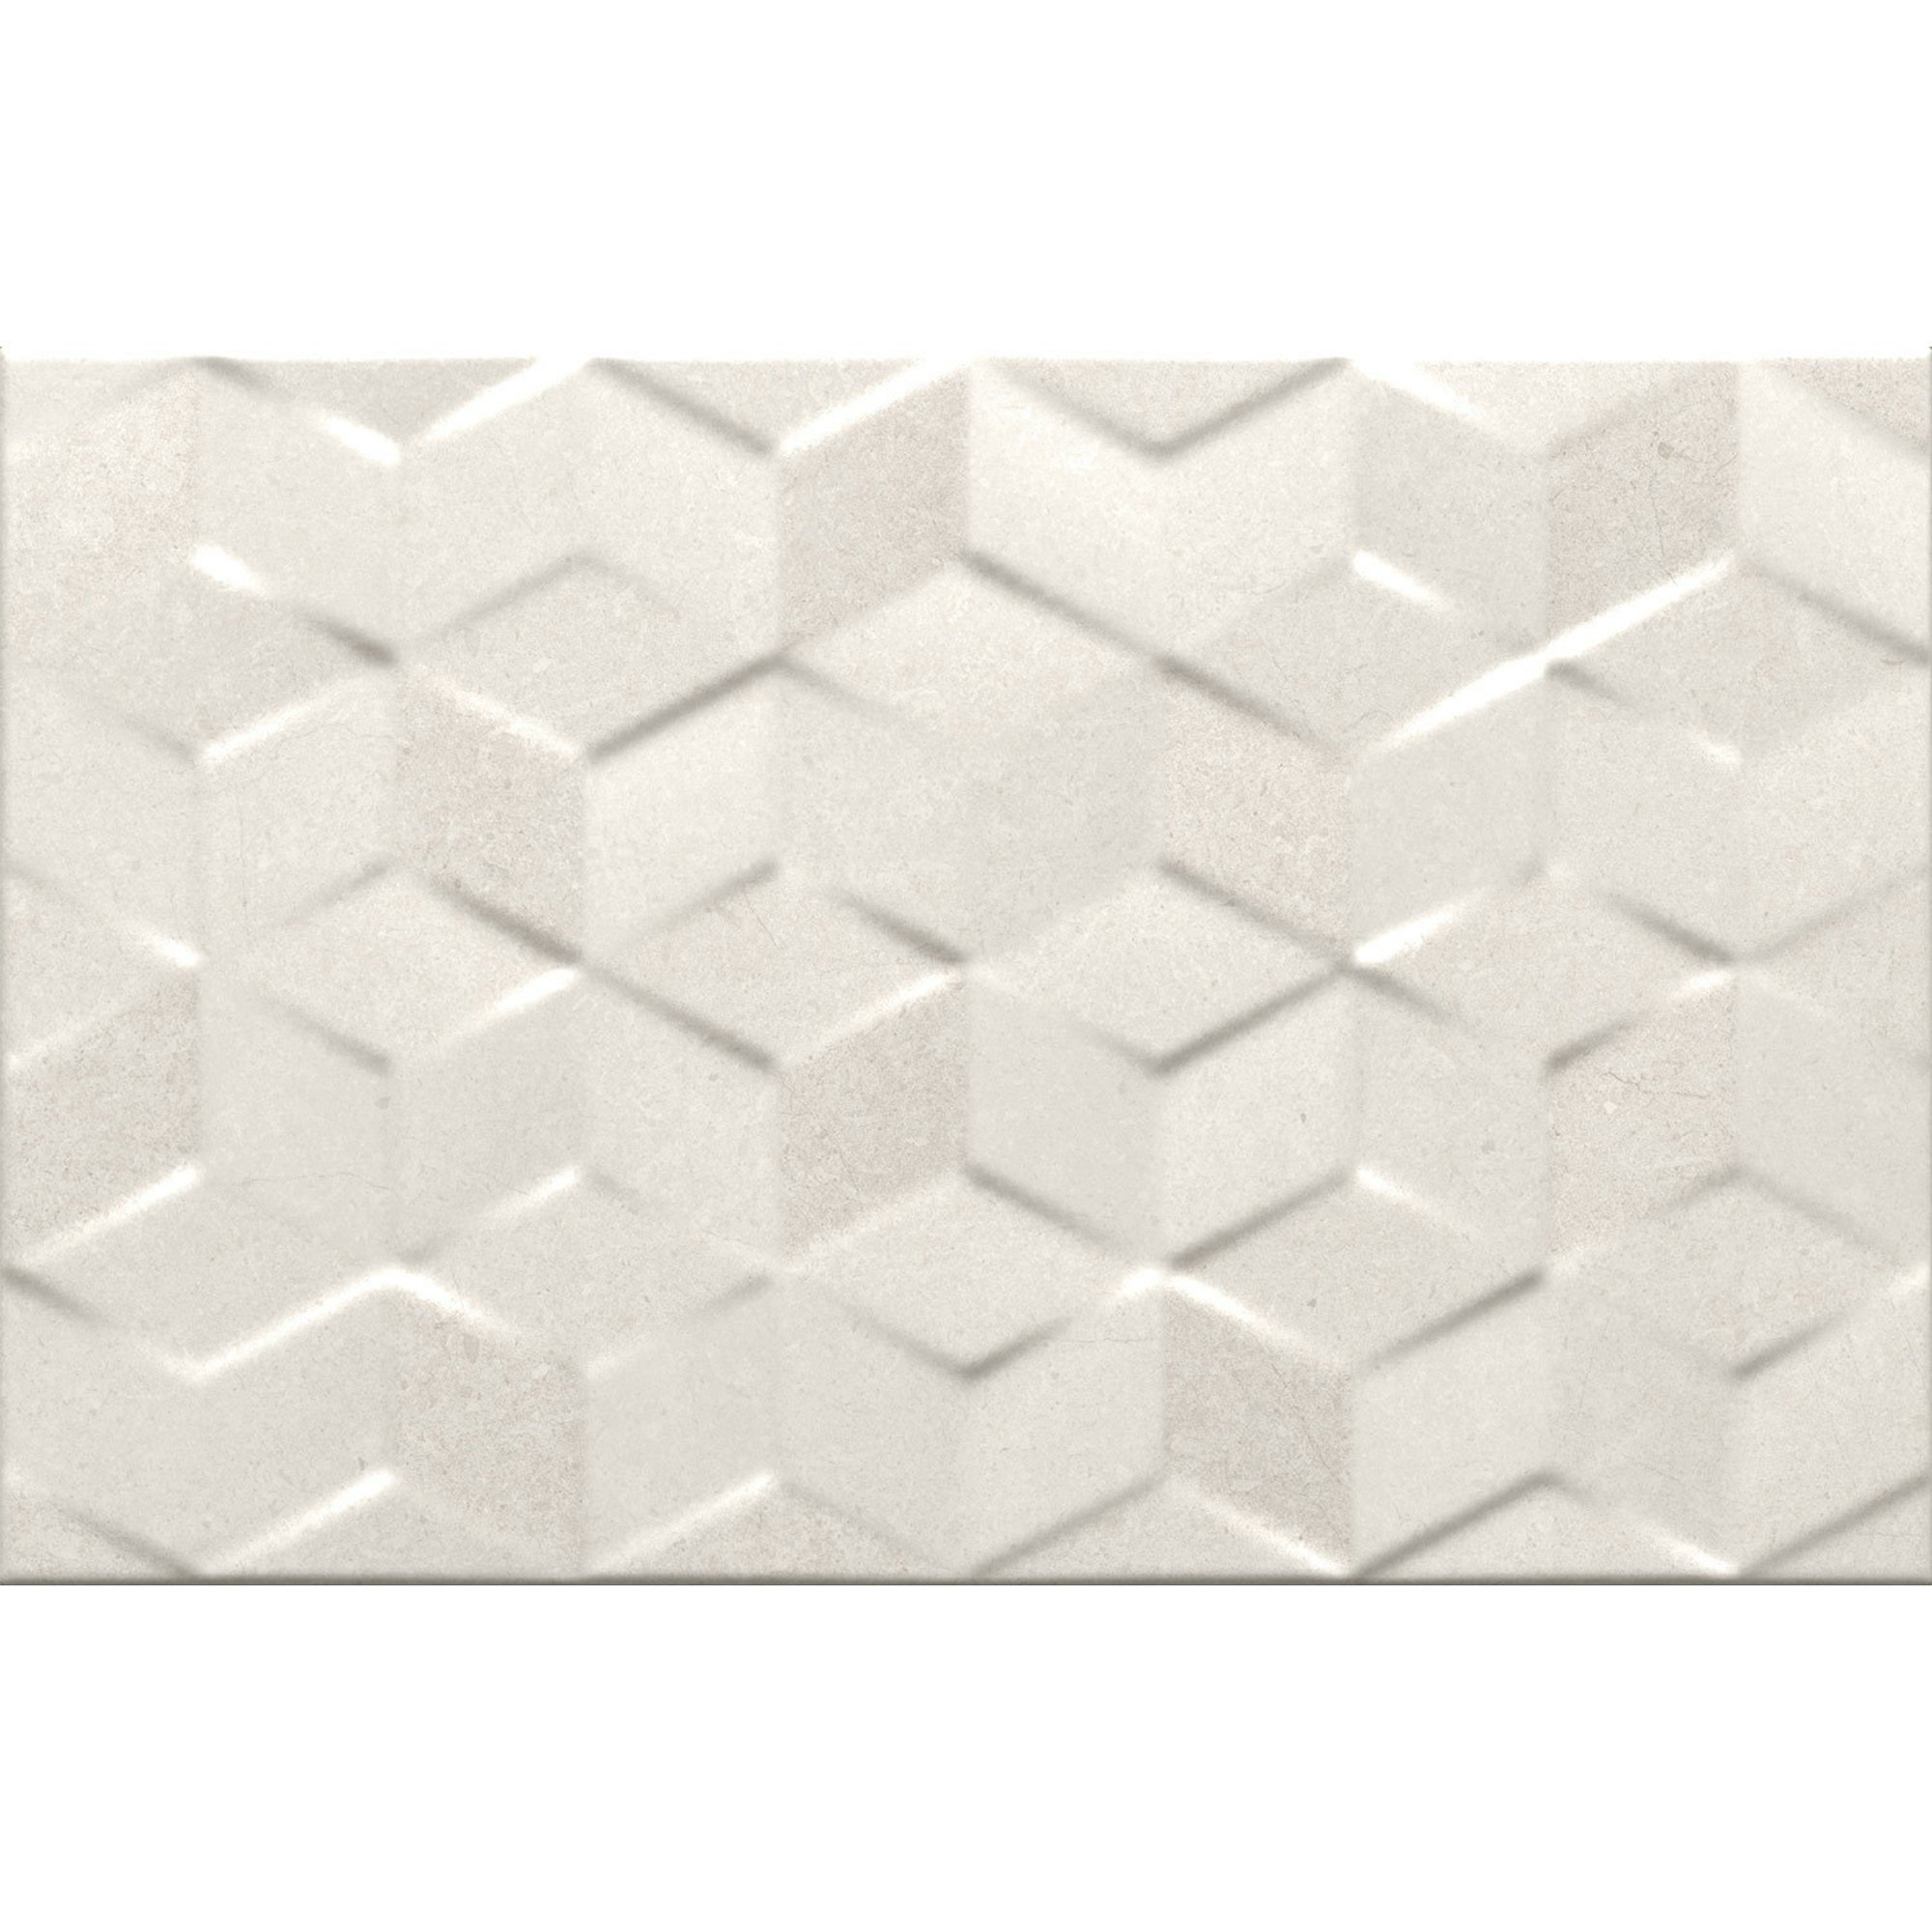 Arundel White Decor Tile